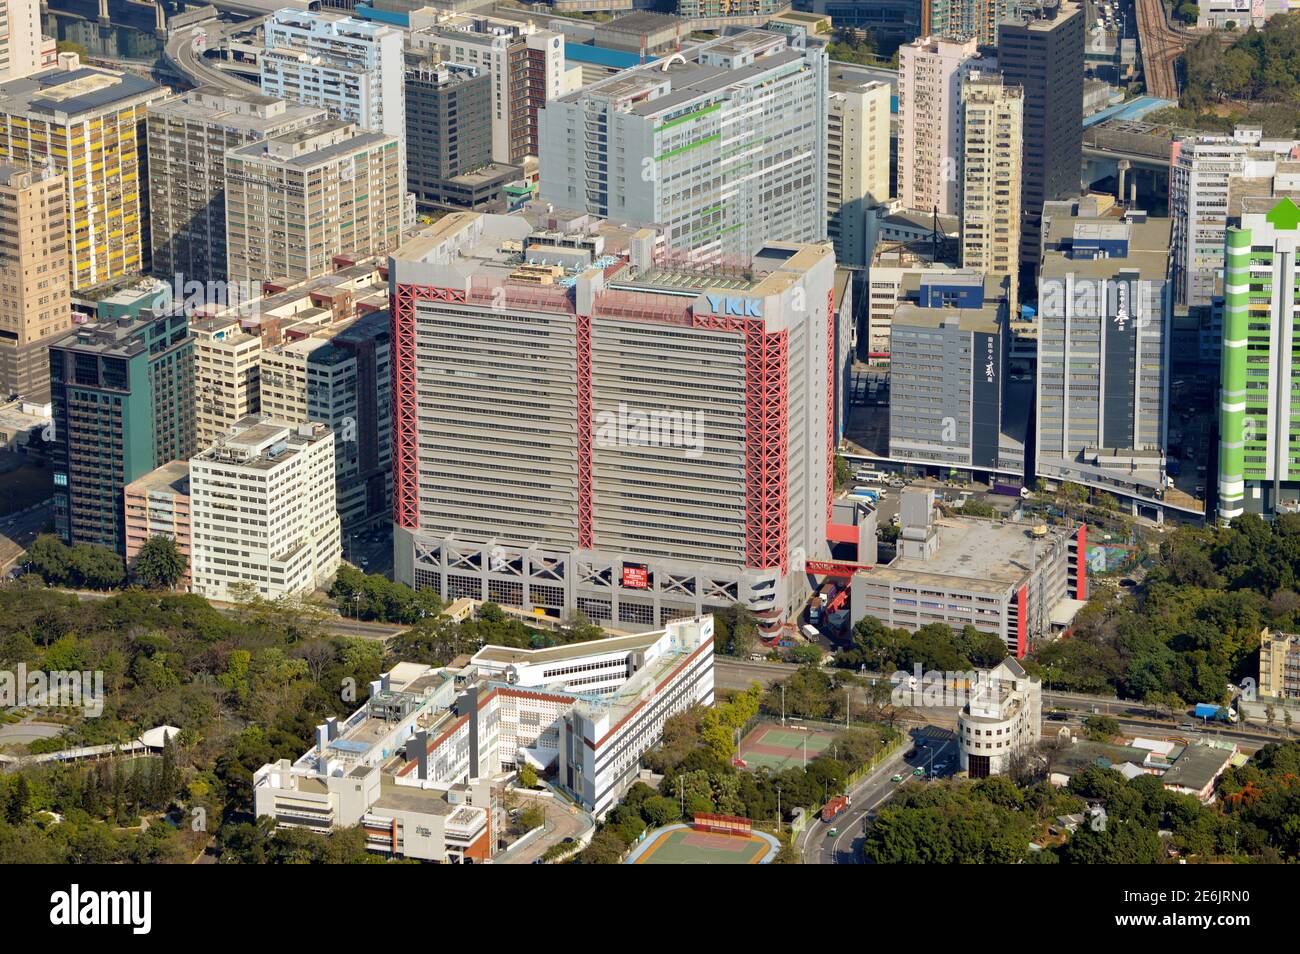 Bâtiment YKK (吉田大廈) et autres bâtiments industriels de la nouvelle ville de Tuen Mun, Hong Kong Banque D'Images